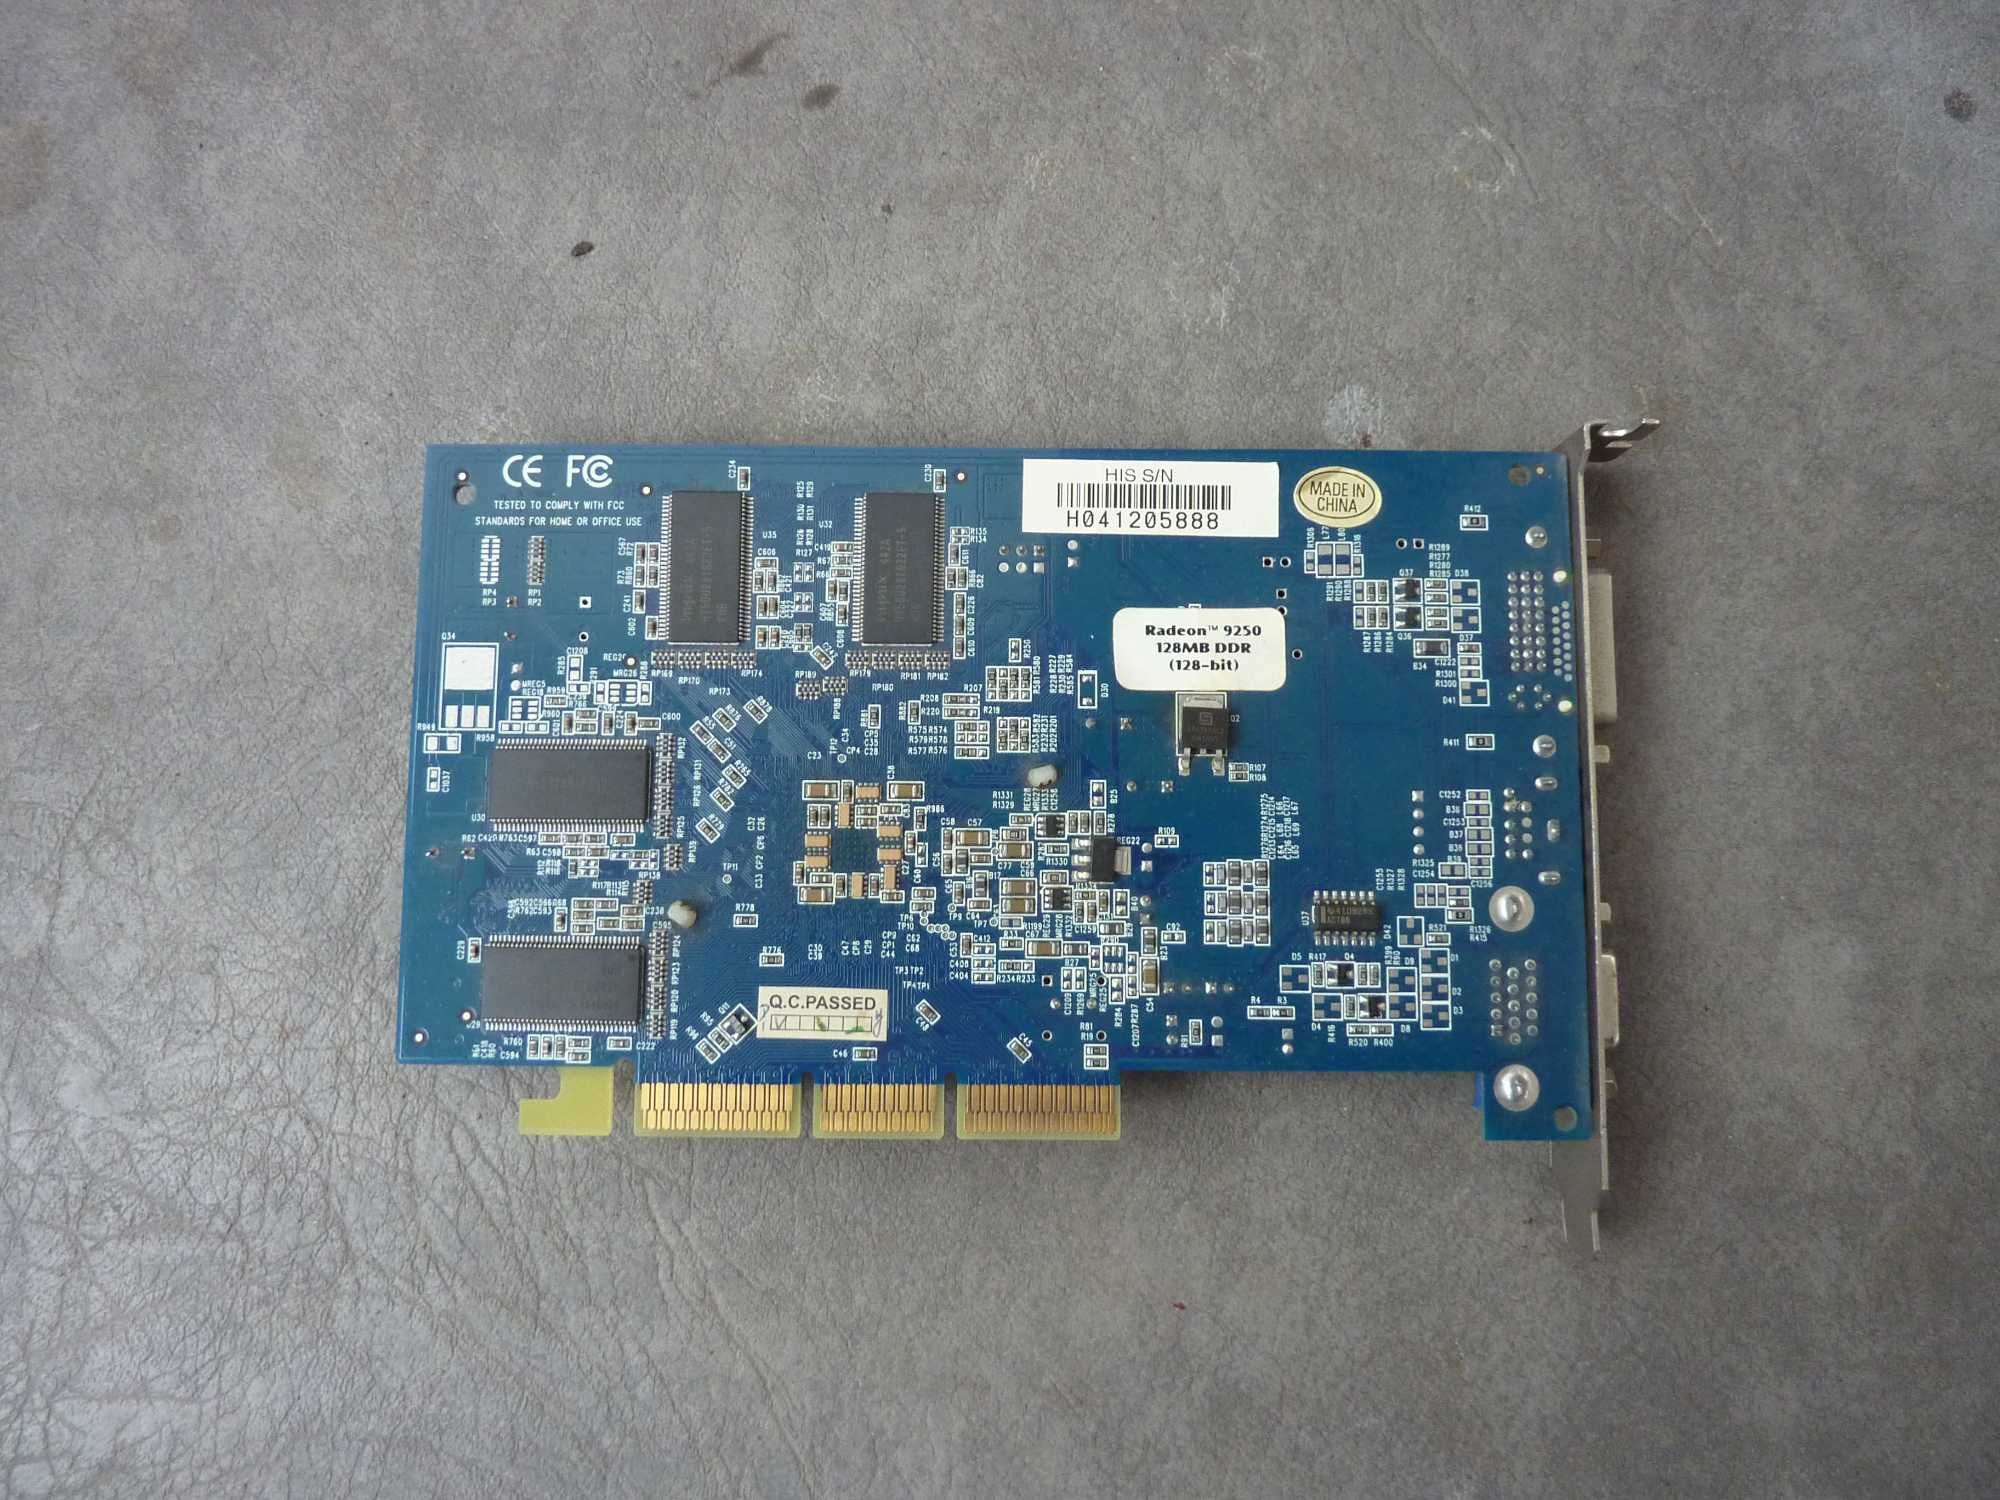 Видиокарта Radeon 9250 128mb DDR 128bit AGP